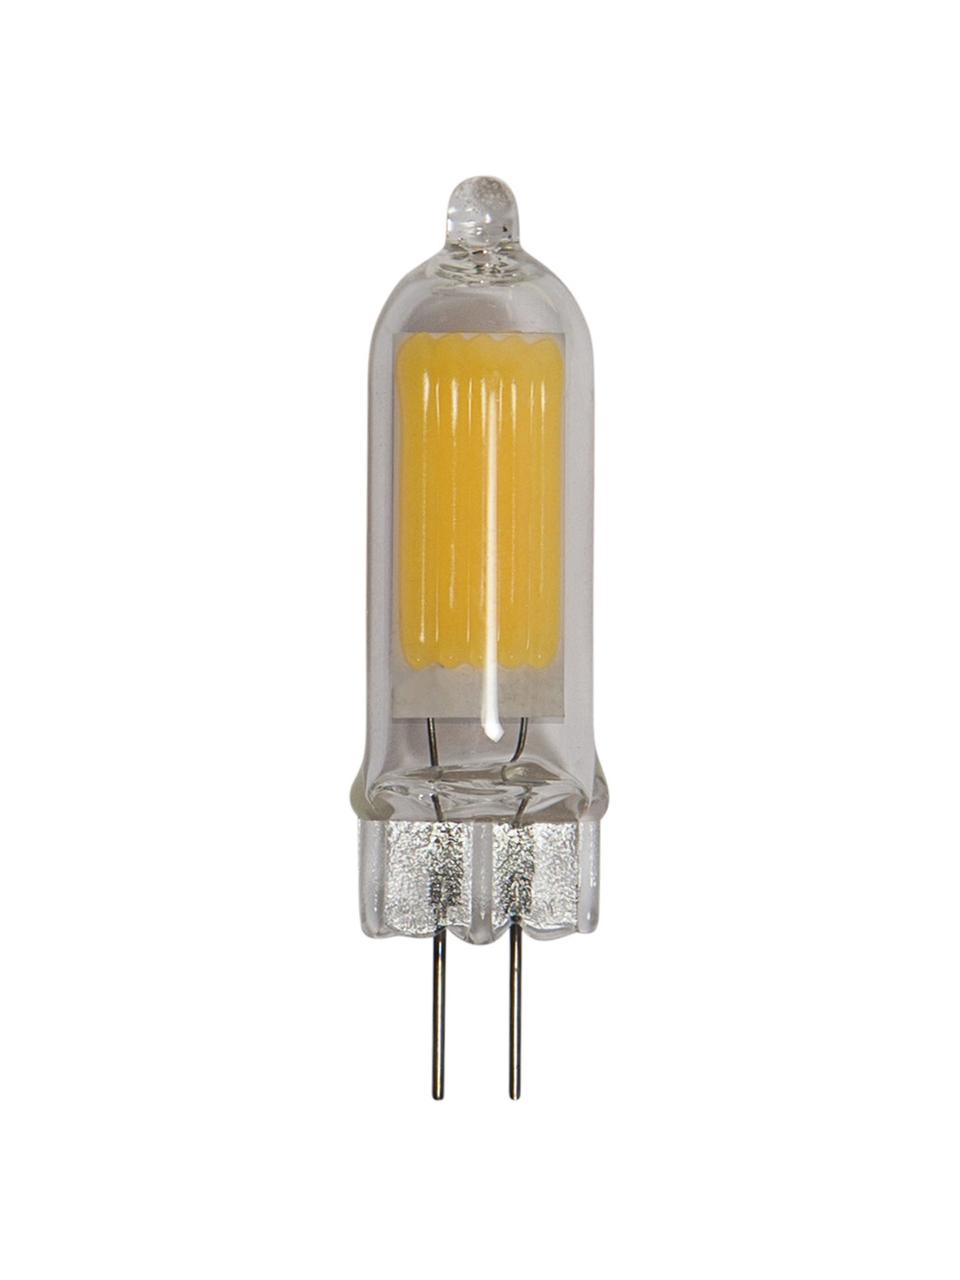 Żarówka LED G4/180 lm, ciepła biel, 1 szt., Transparentny, Ø 1 x W 5 cm